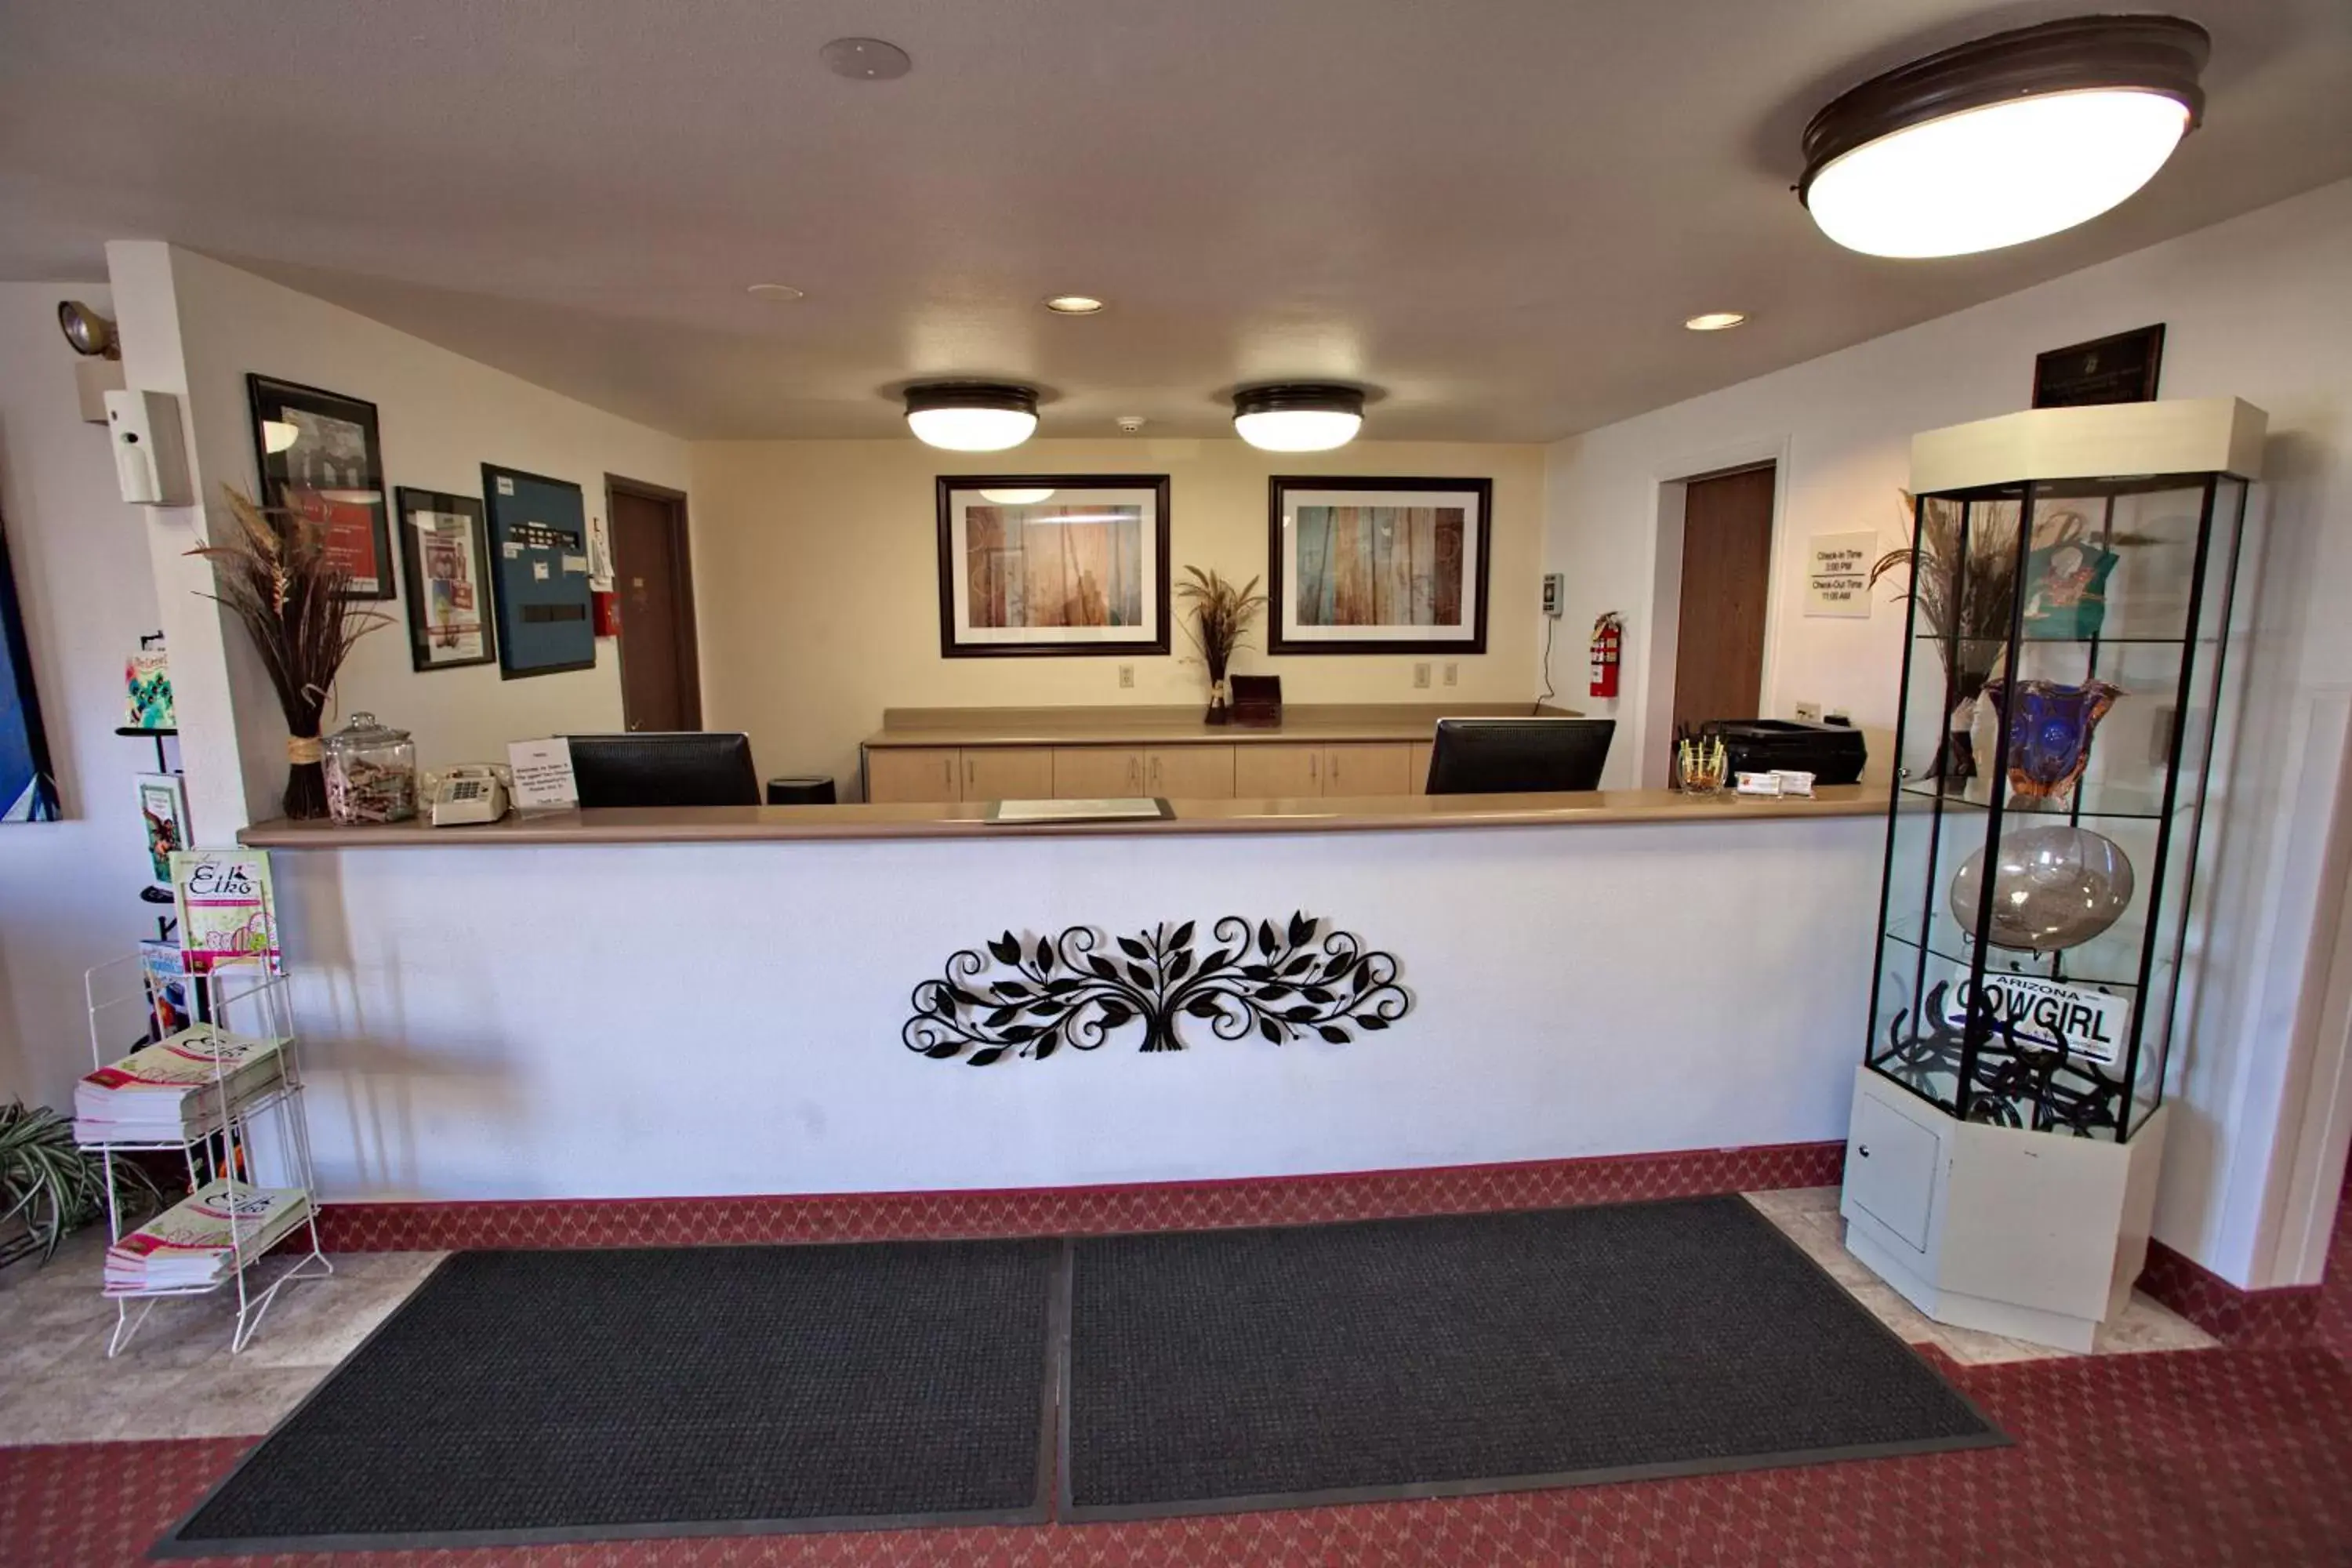 Lobby or reception, Lobby/Reception in Super 8 by Wyndham Elko